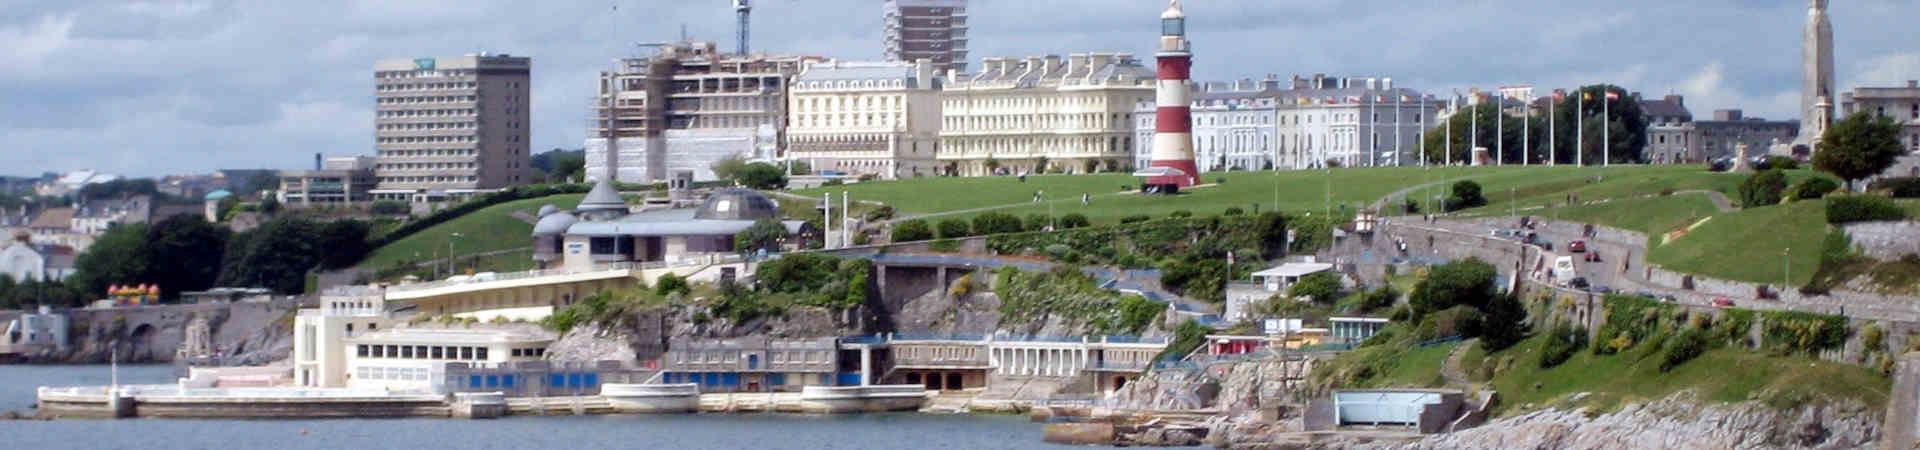 Imagen recurso del puerto de destino Plymouth para la ruta en ferry Santander - Plymouth